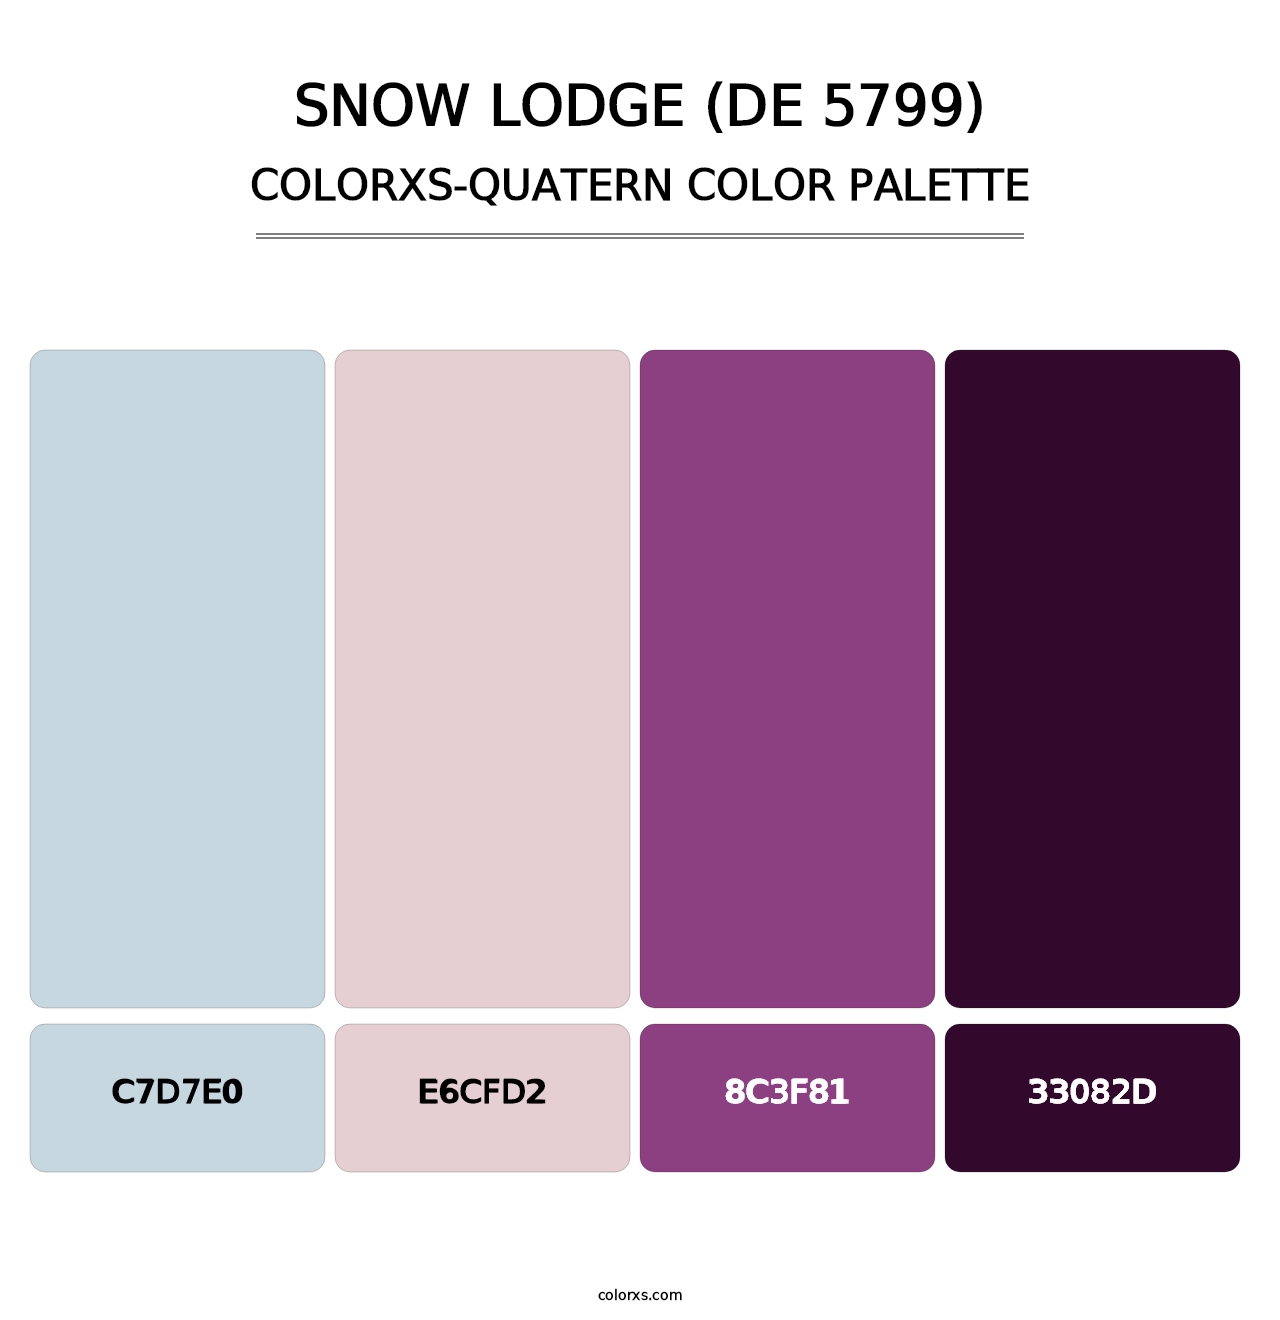 Snow Lodge (DE 5799) - Colorxs Quatern Palette